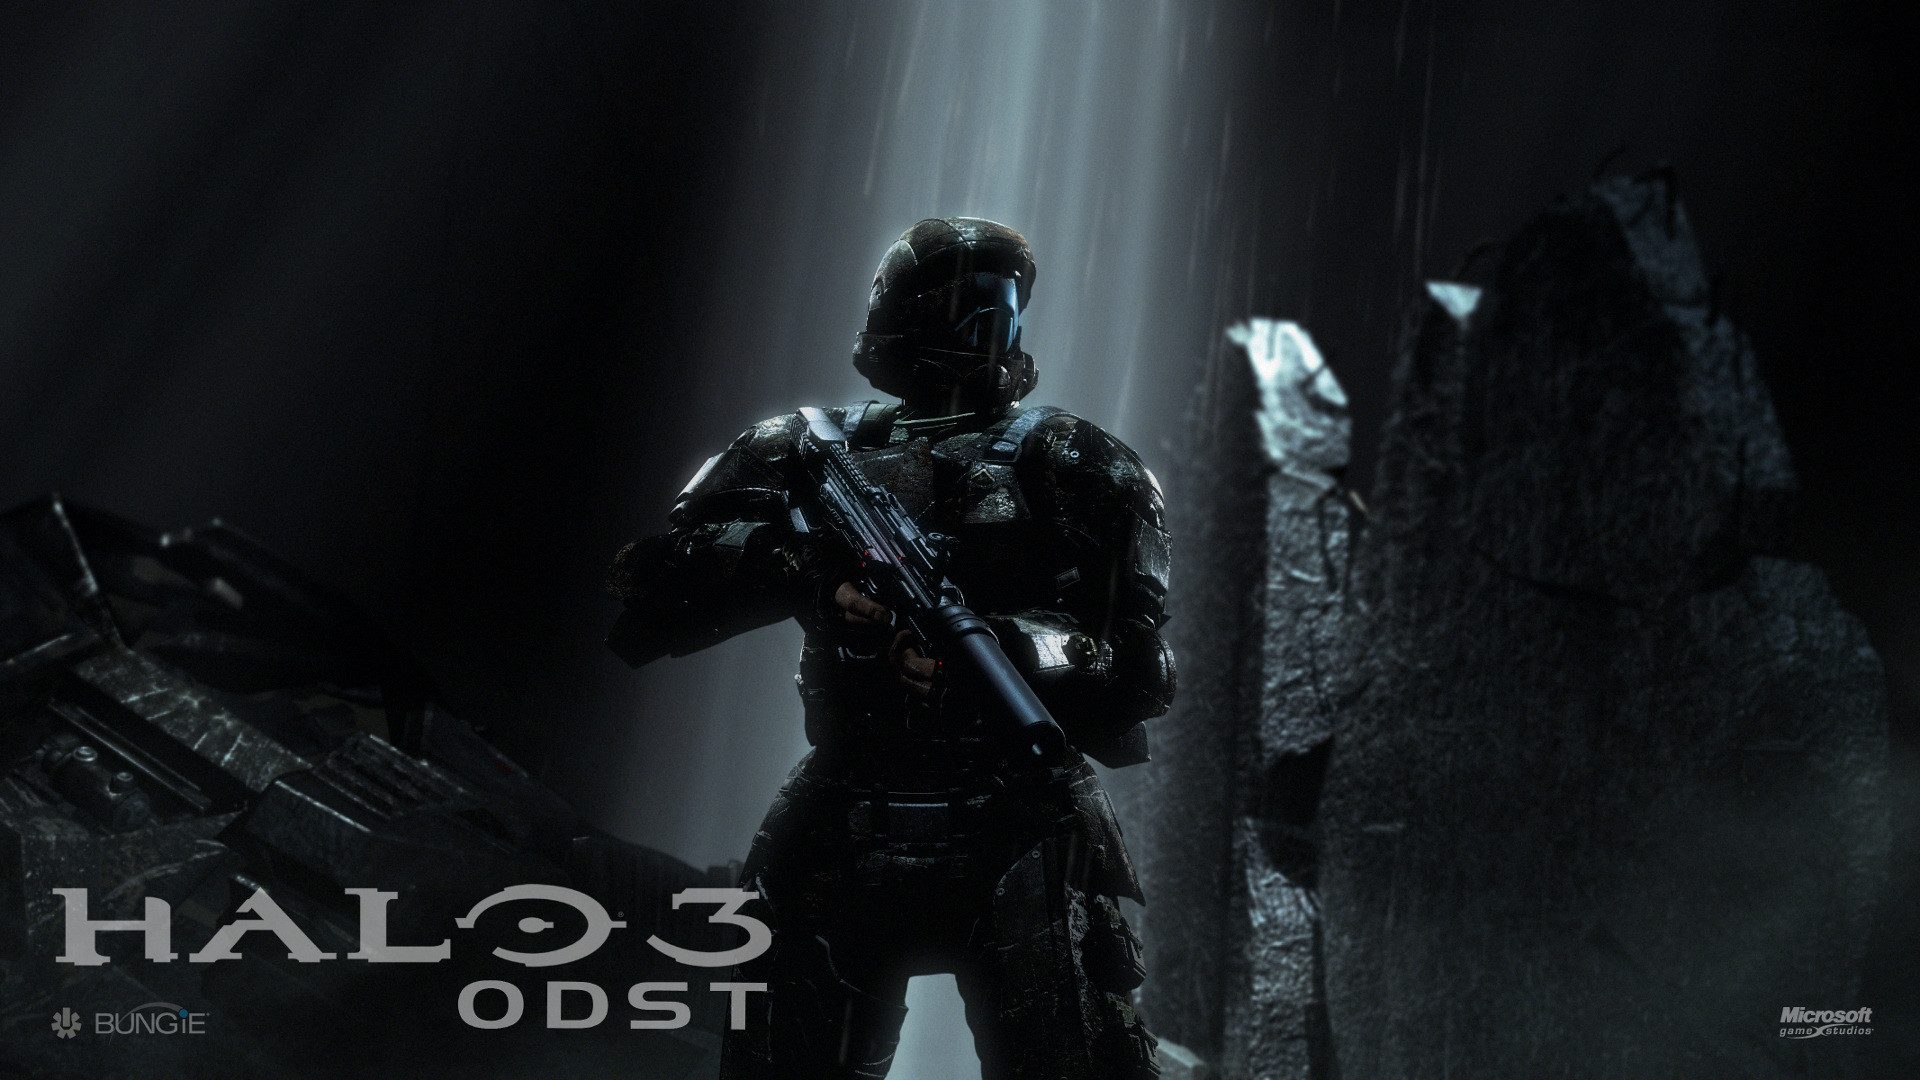 Halo 3 ODST 4K wallpaper download